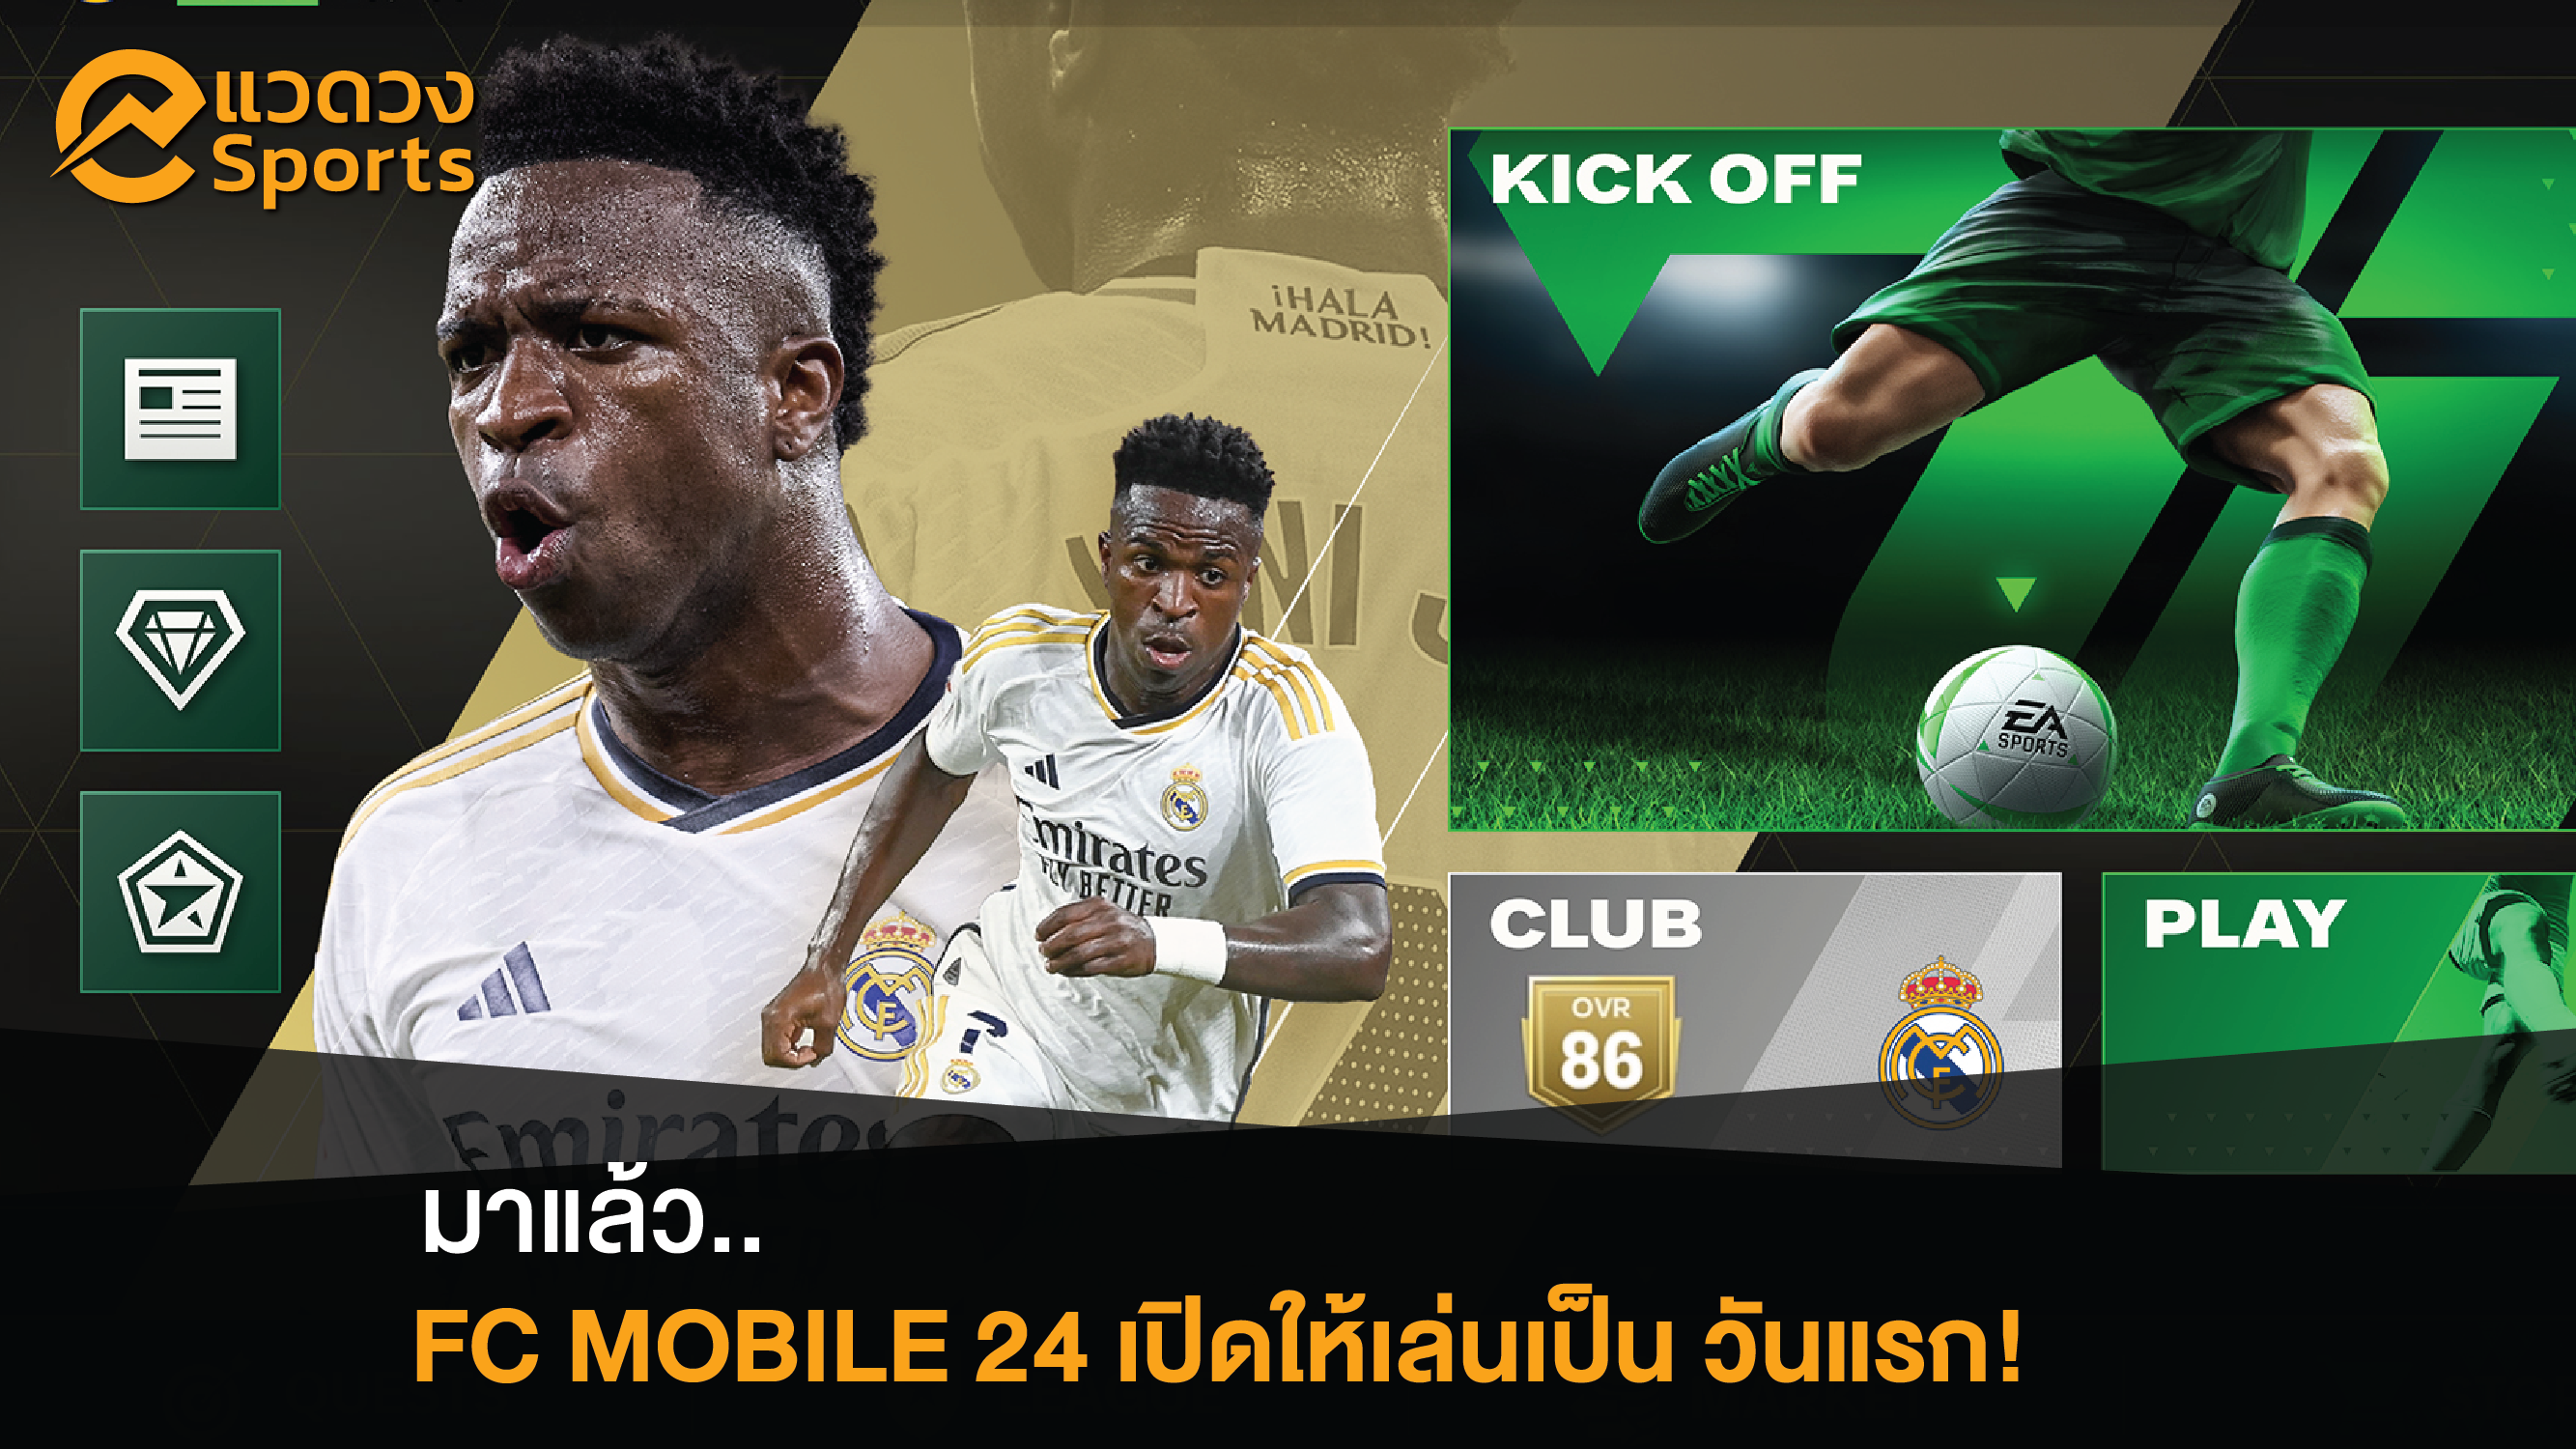 ‘FC Onile 24’ เปิดให้บริการวันนี้ วันแรก!